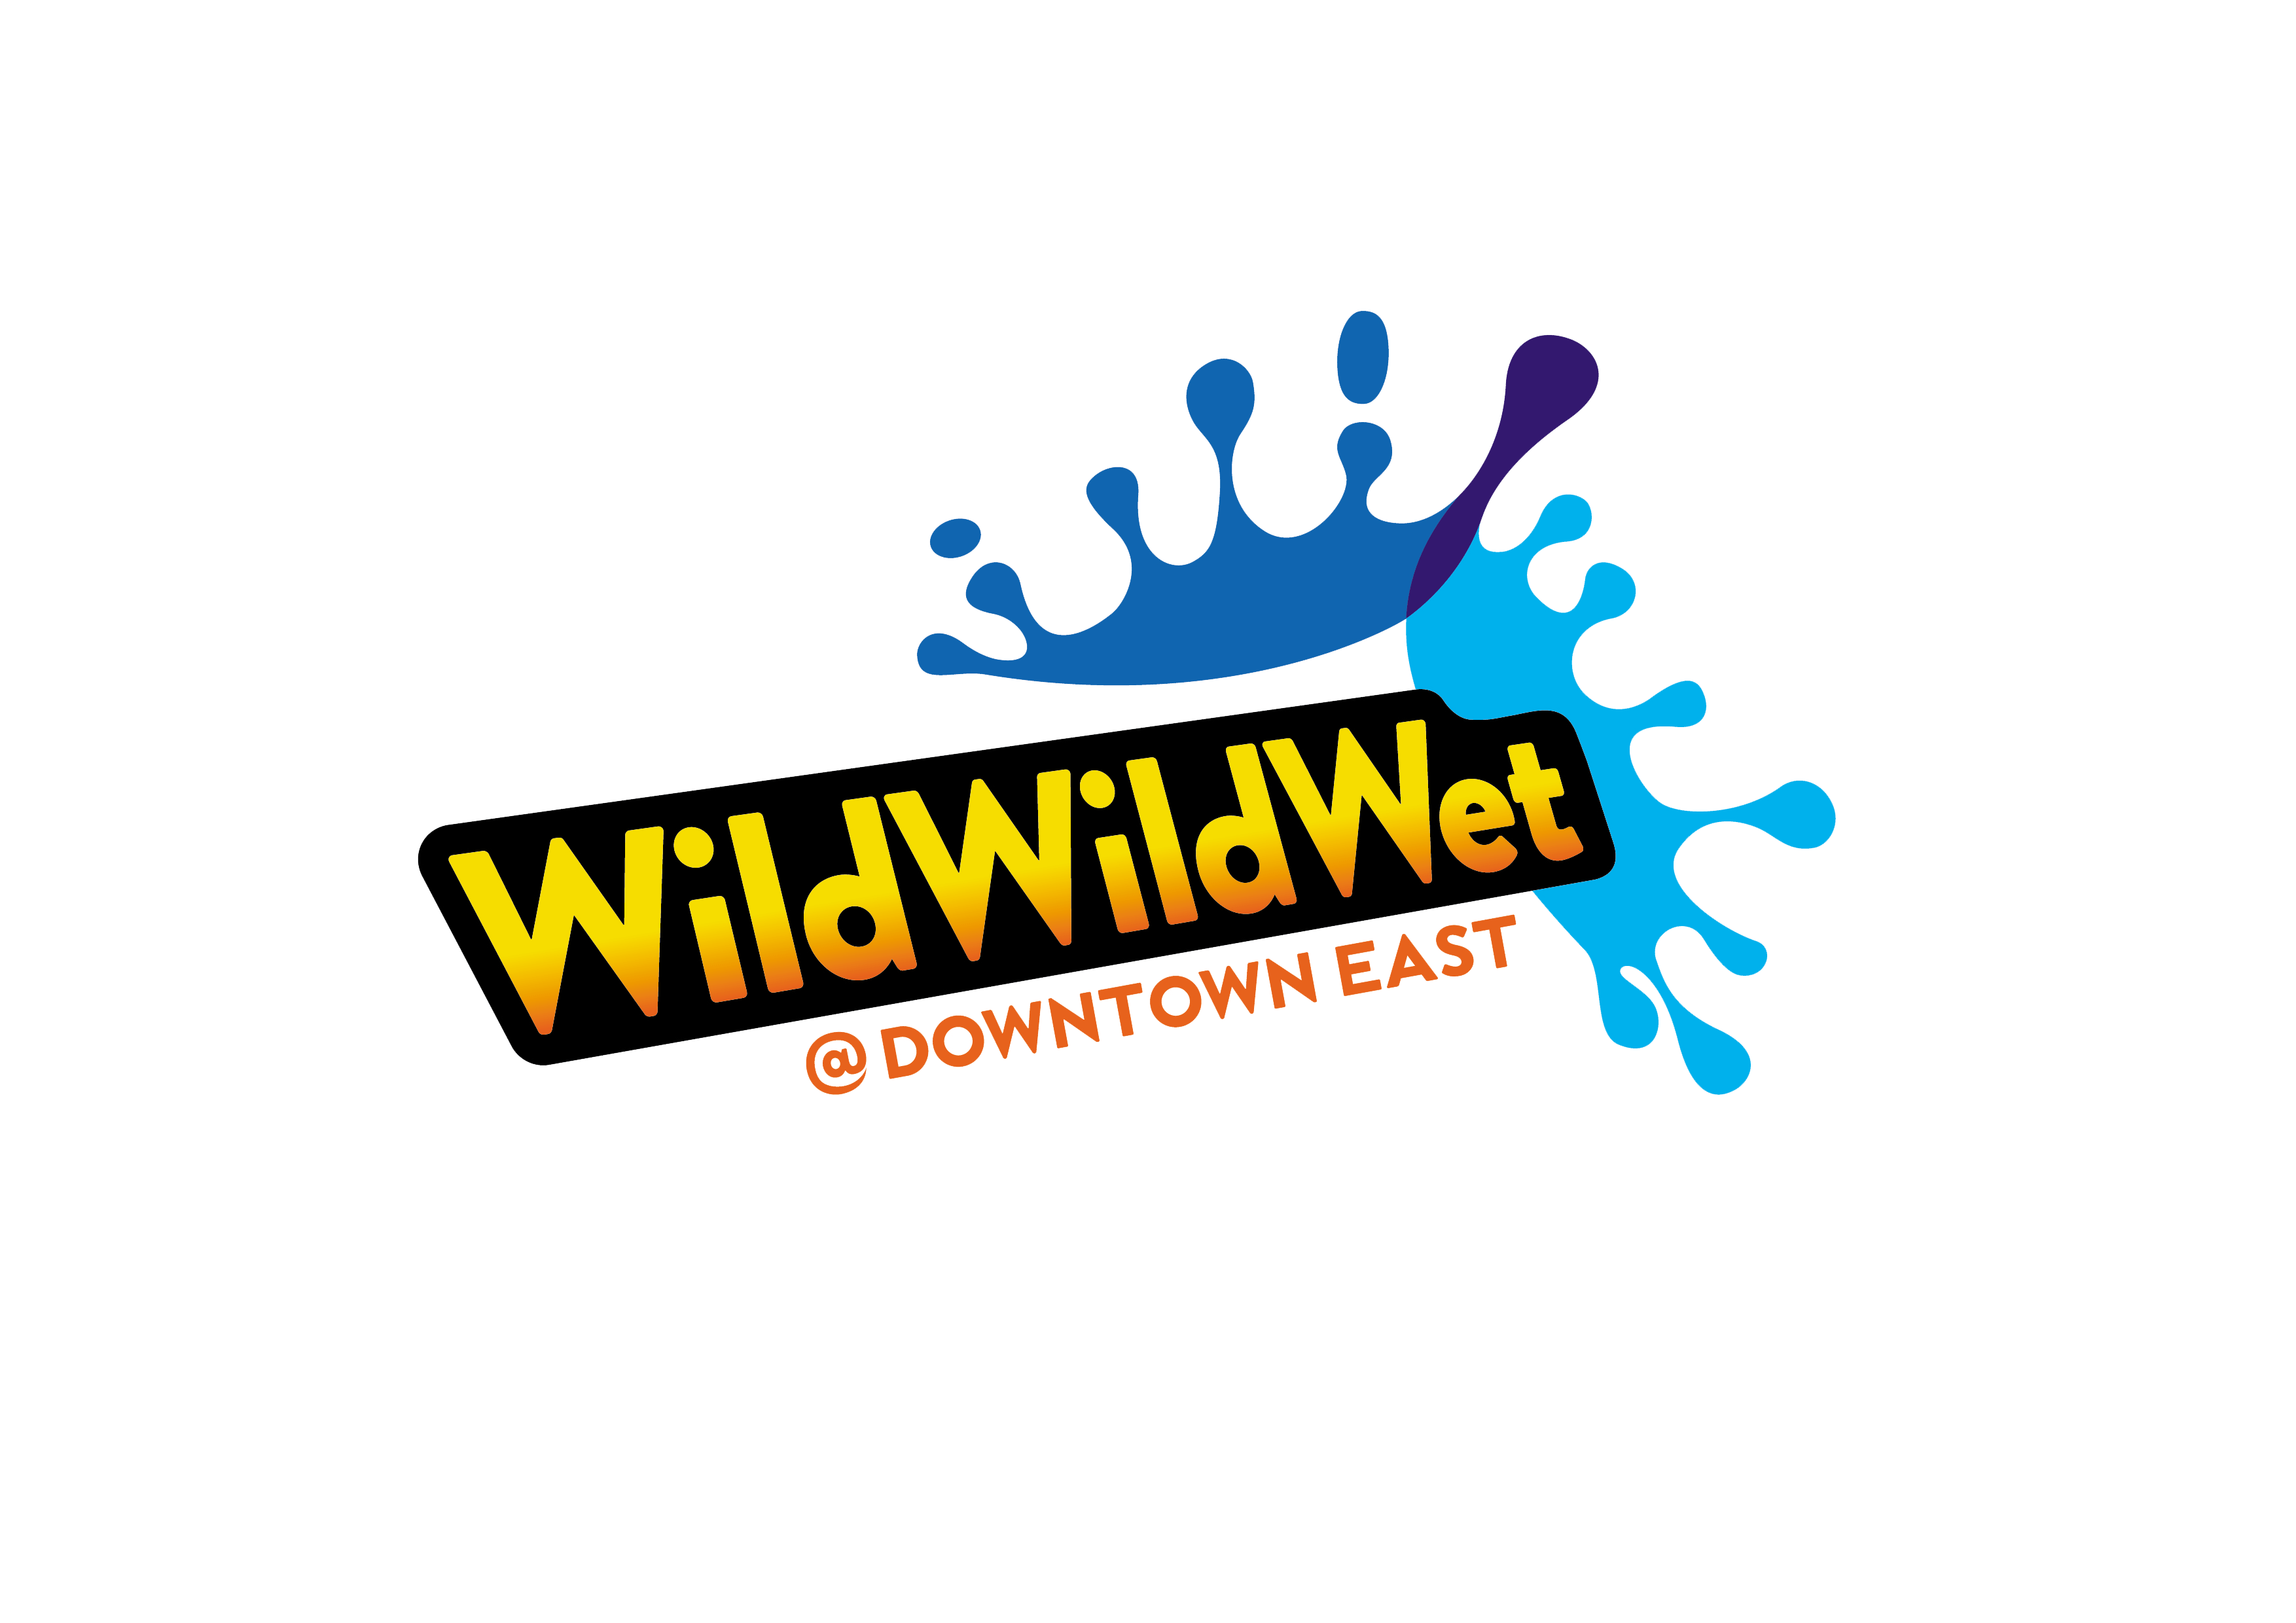 Wild Wild Wet Logo